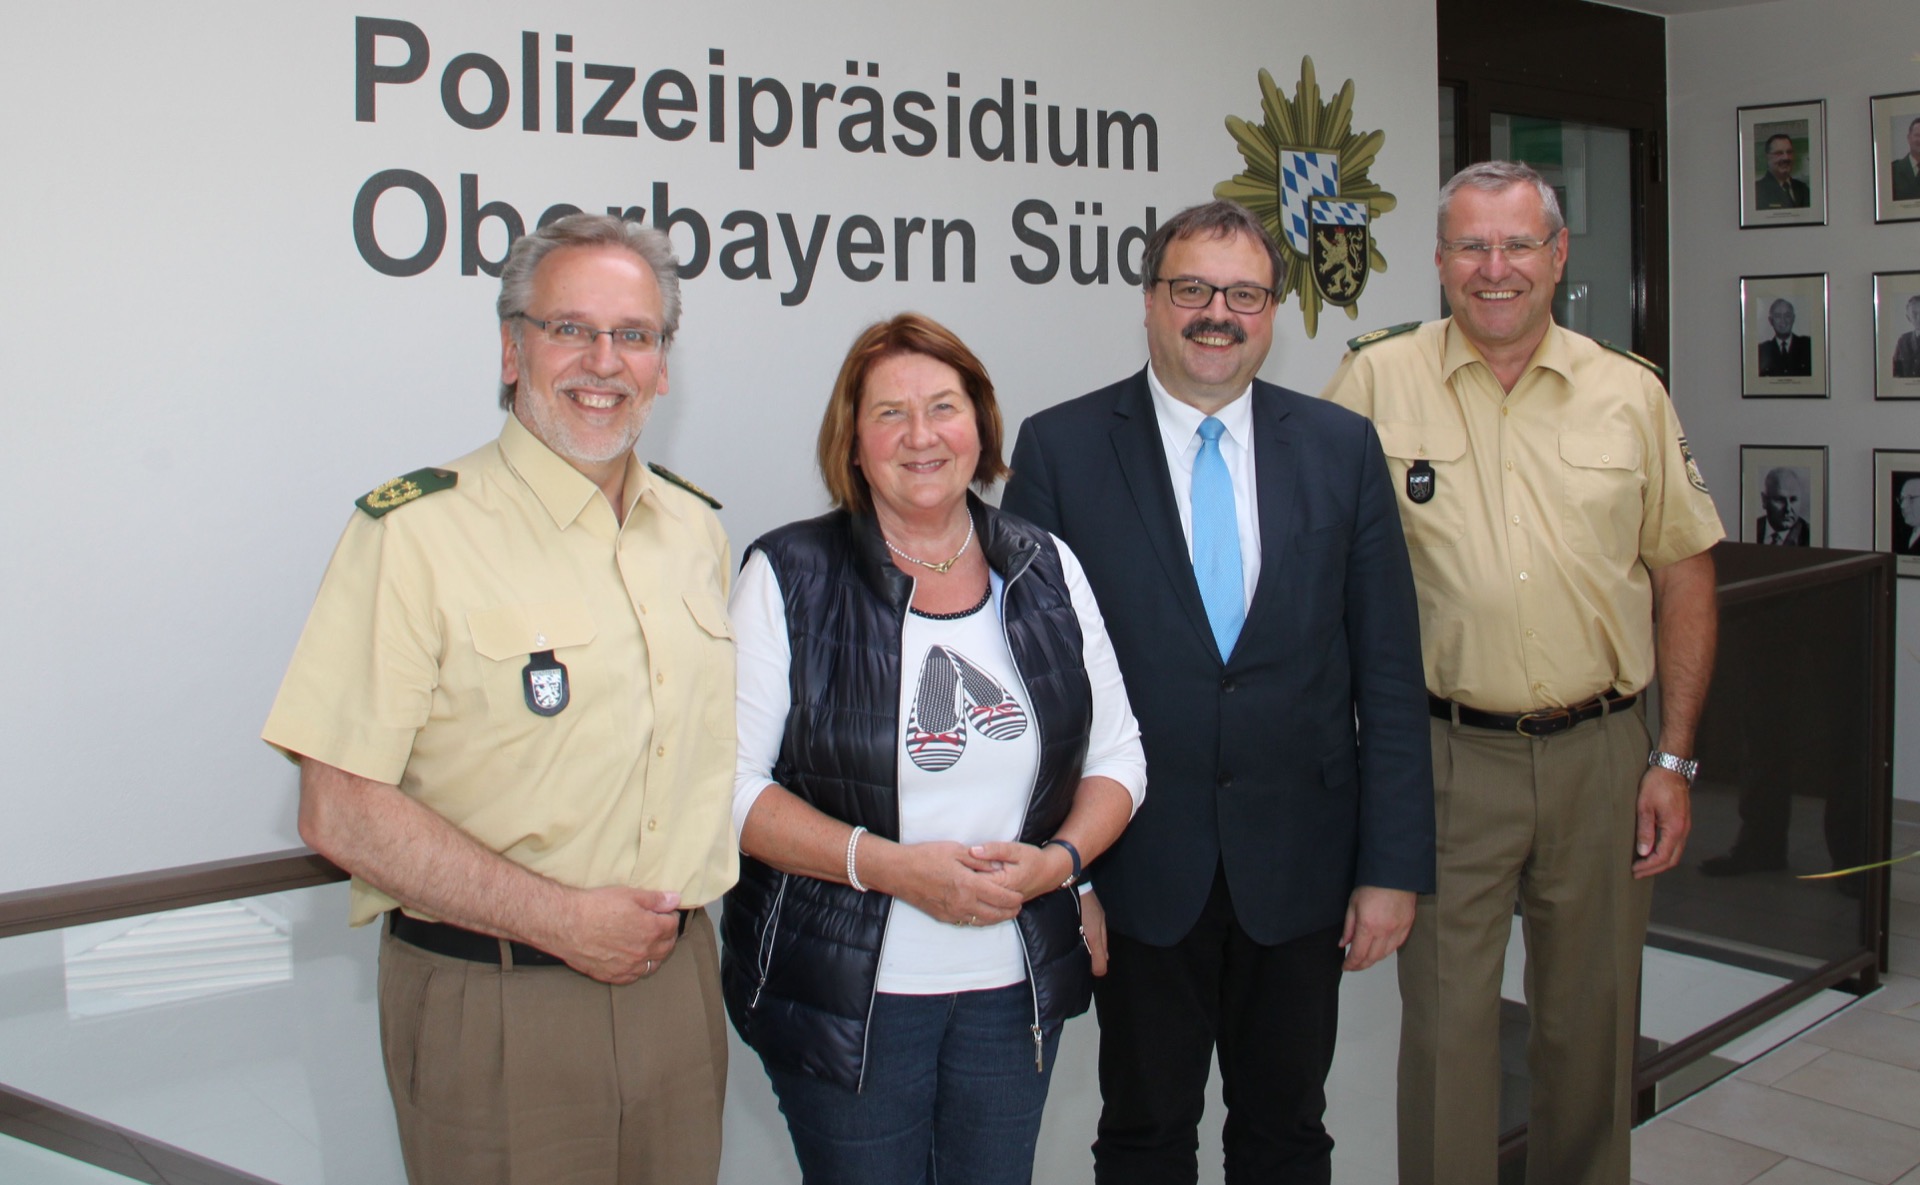 Auf unserem Foto sehen Sie von links: Polizeipräsident Robert Kopp, MdL Eva Gottstein, MdL Peter Meyer und Polizeivizepräsident Peter Mauthofer. 
(Foto: Polizeipräsidium Oberbayern Süd)